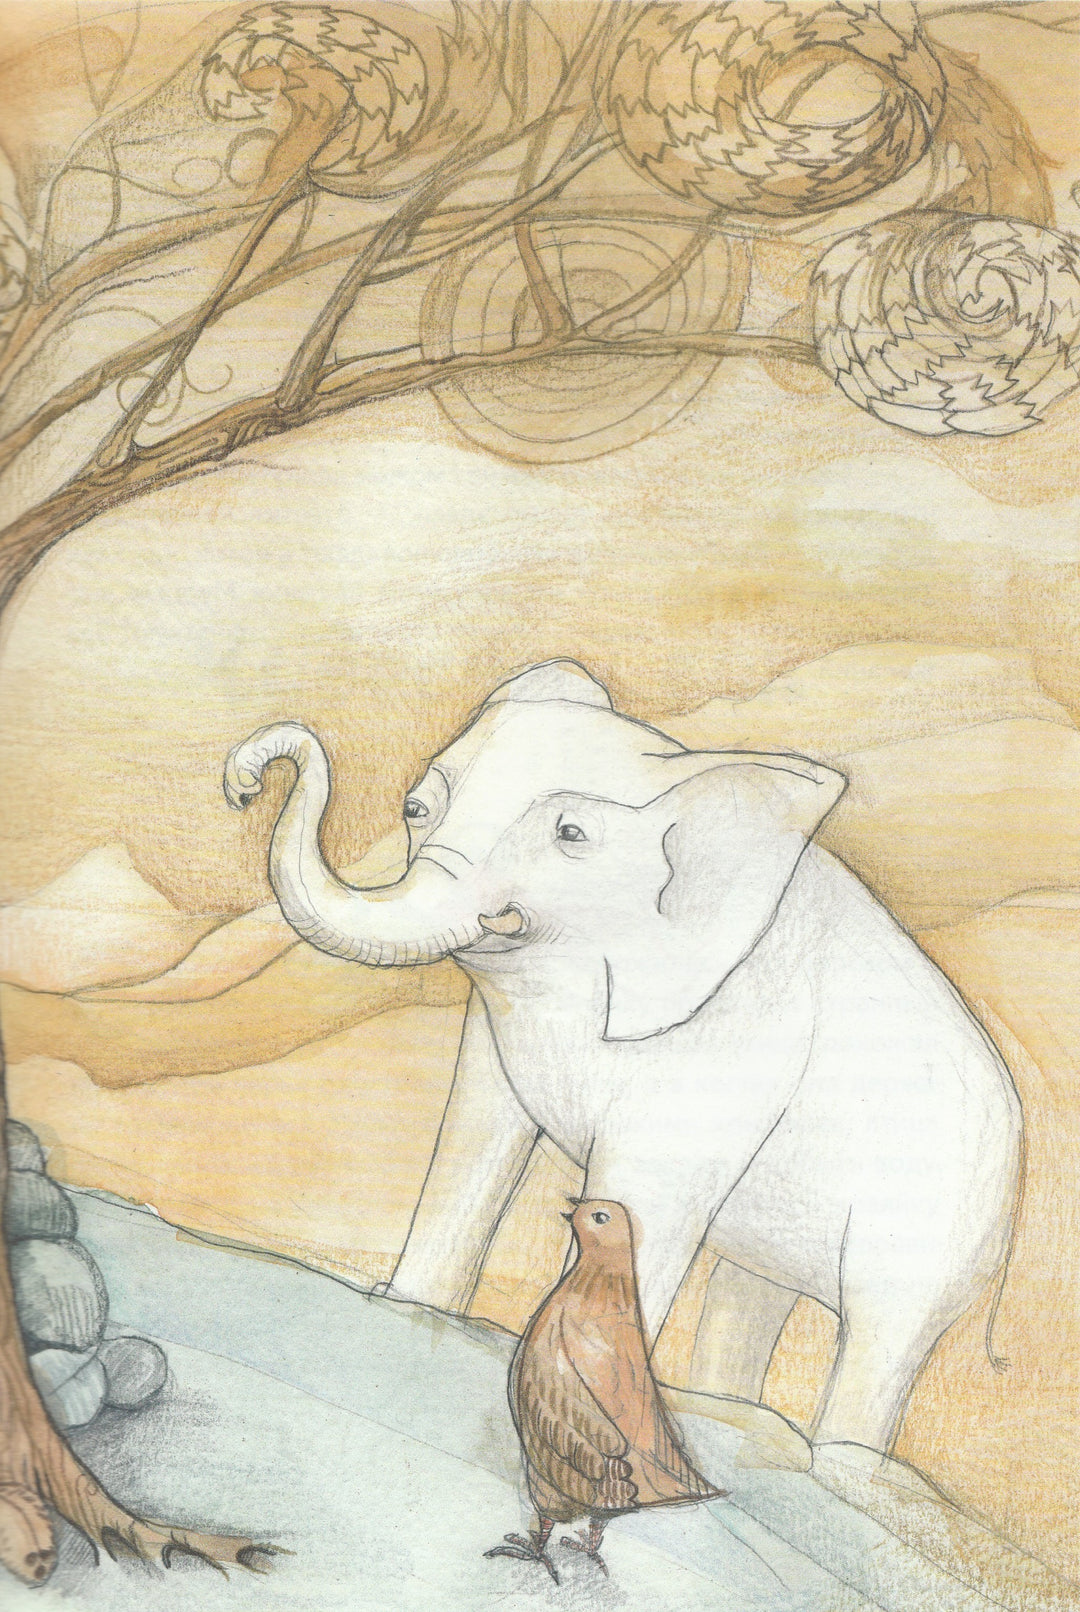 Путешествие слоненка Ланченкара и его друзей на волшебный остров Цейлон-Тенчой-Мир Детства Медиа-Lookomorie